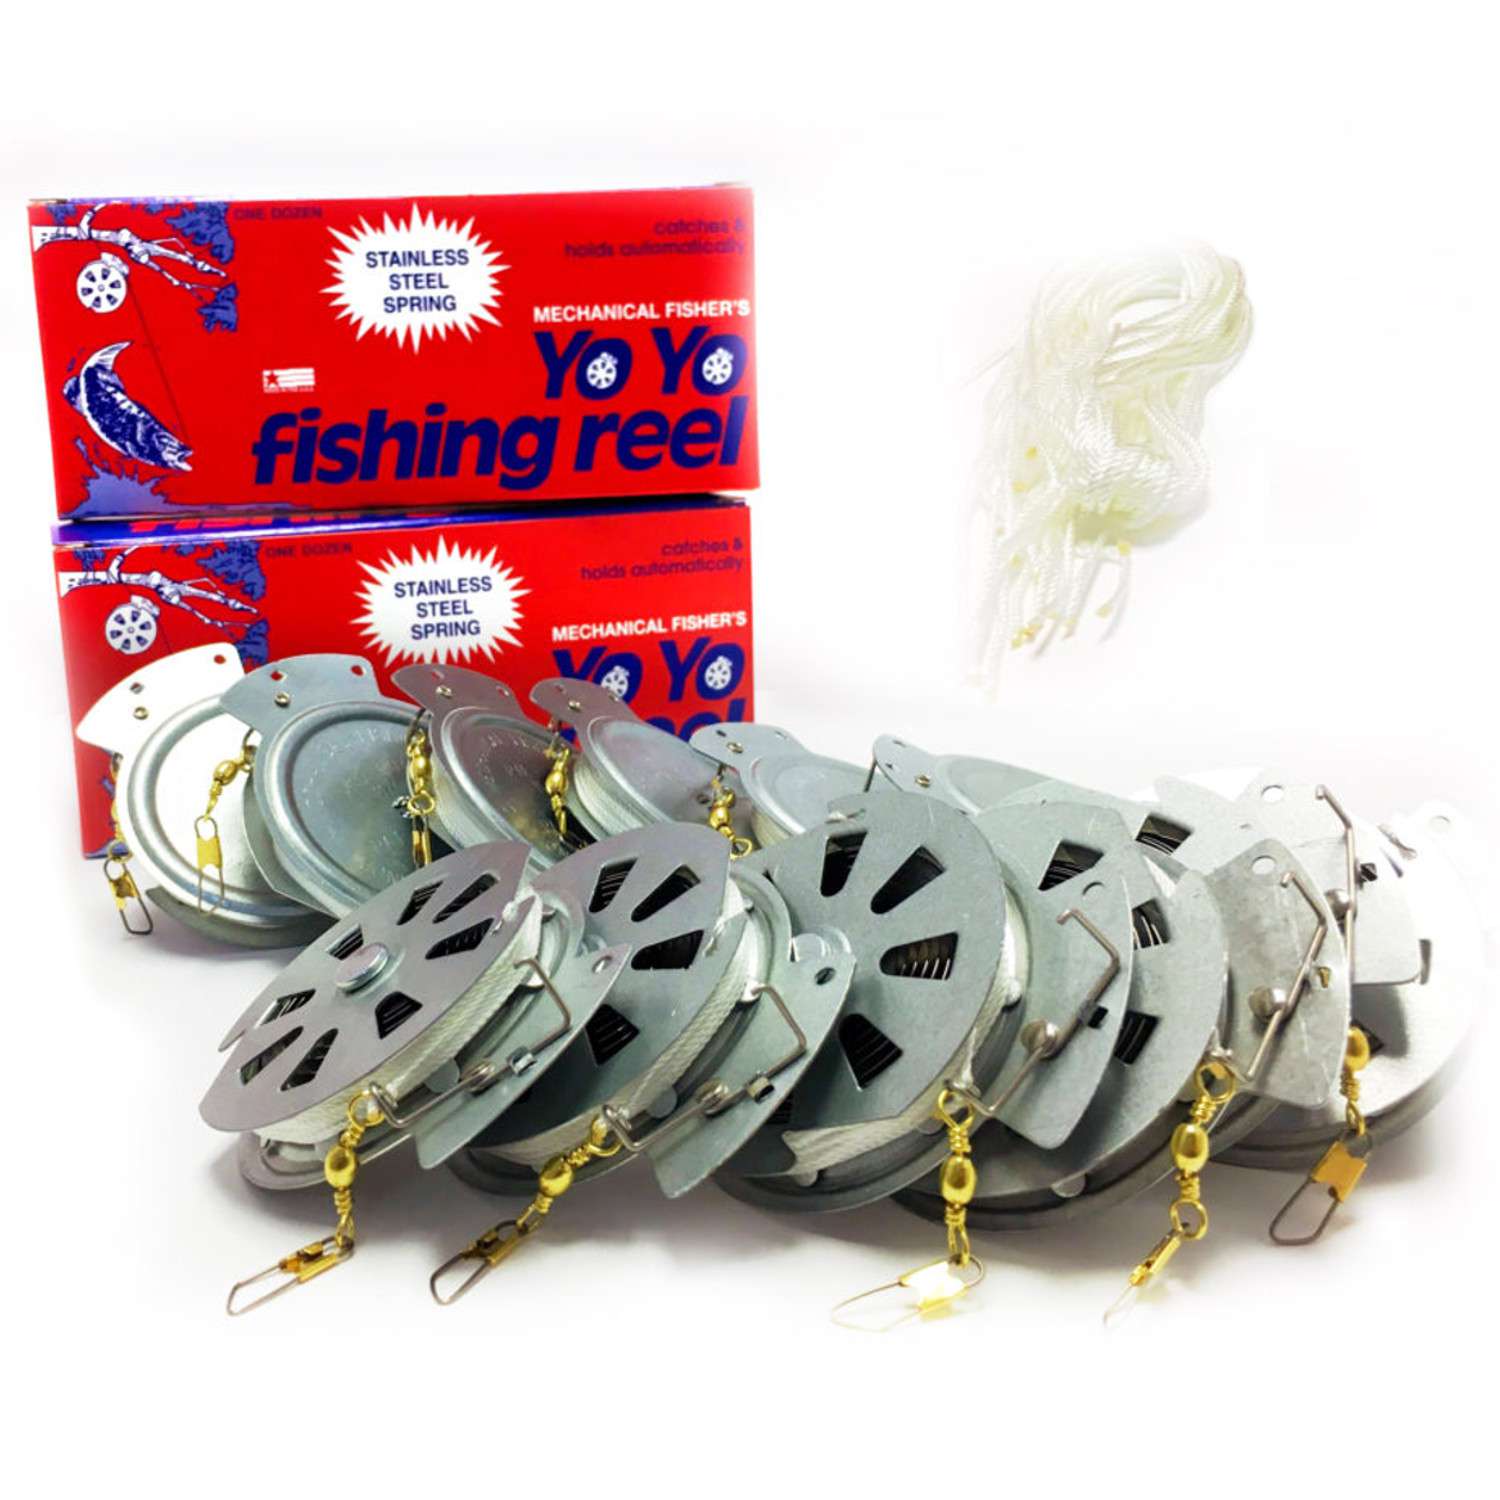 4 Mechanical Fisher's Yo Yo Fishing Reels Yoyo Fish Trap... Package of 4 Reels 